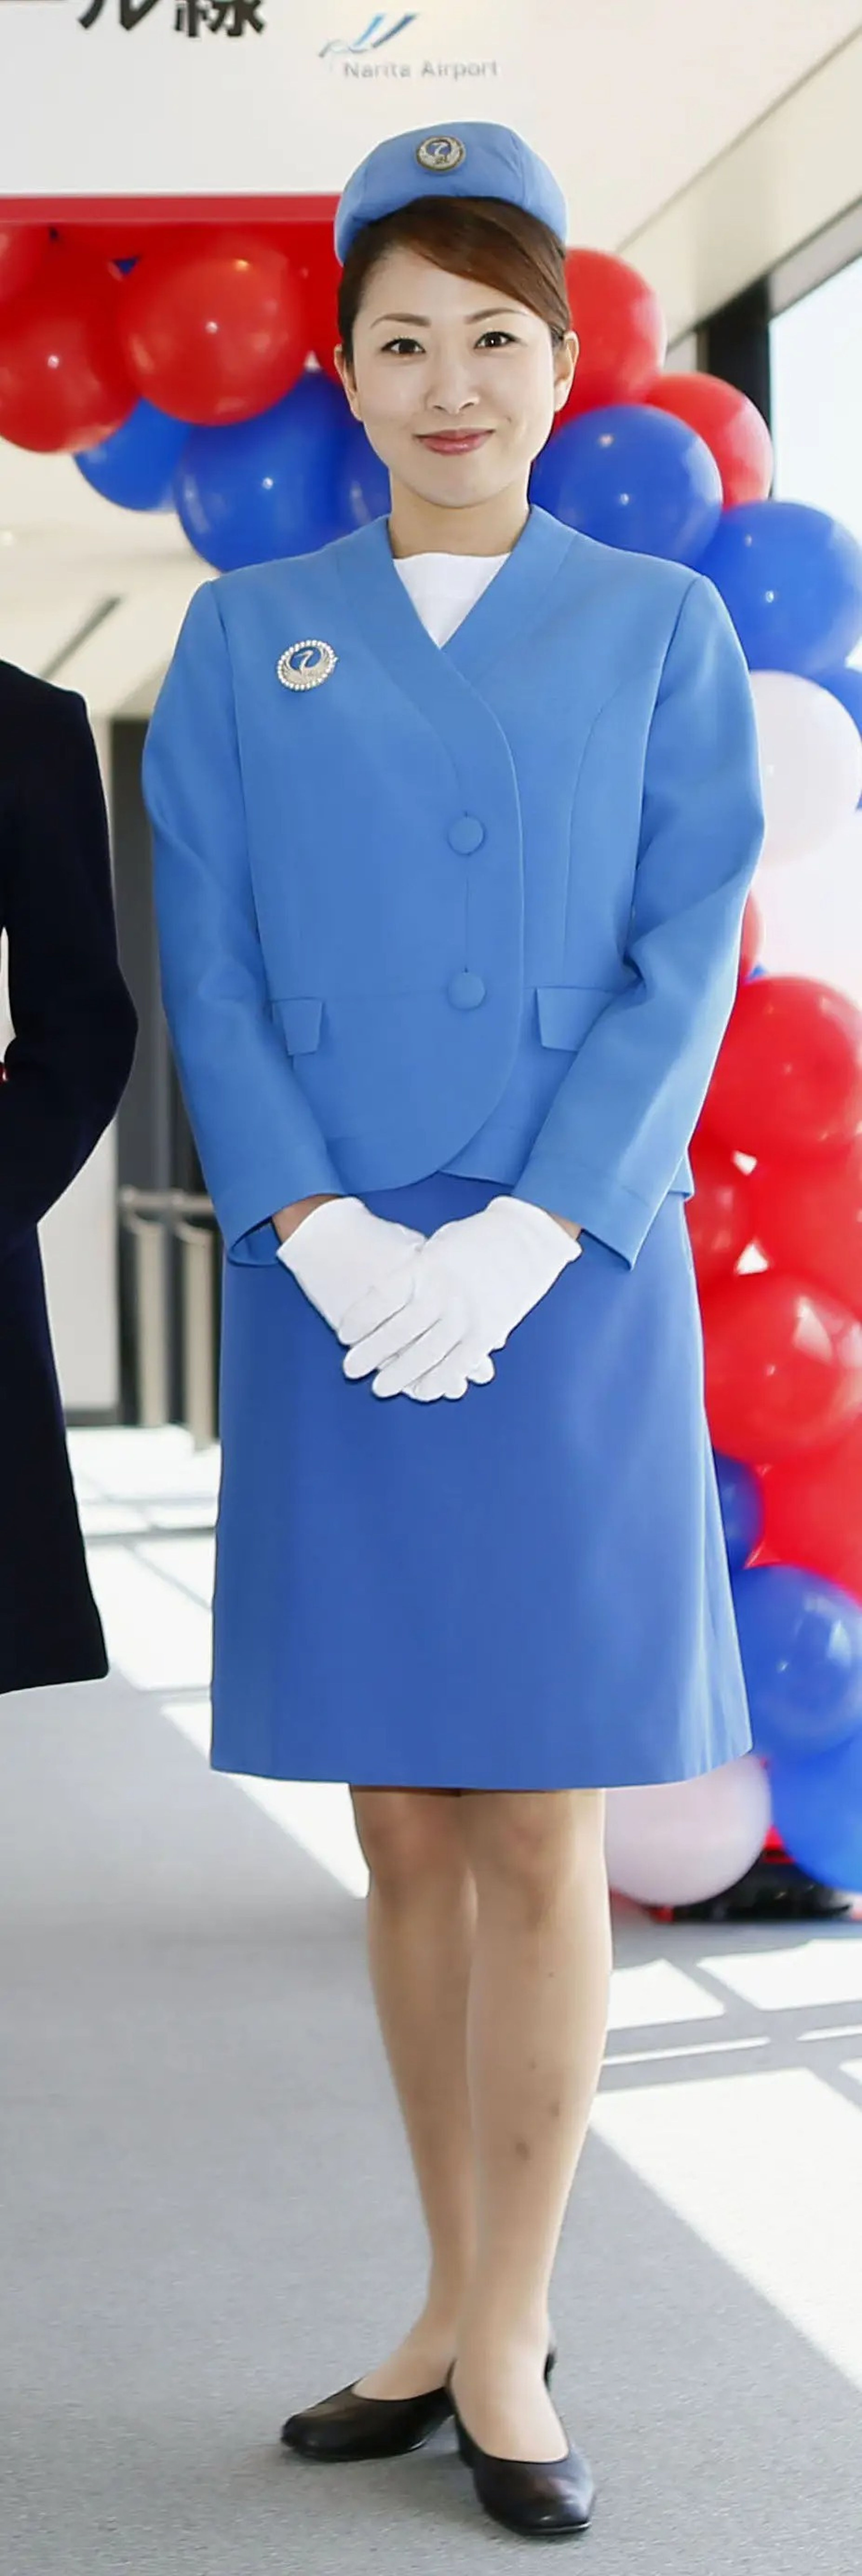 Una mujer presenta el uniforme de cuarta generación de la aerolínea en una ceremonia en 2017.